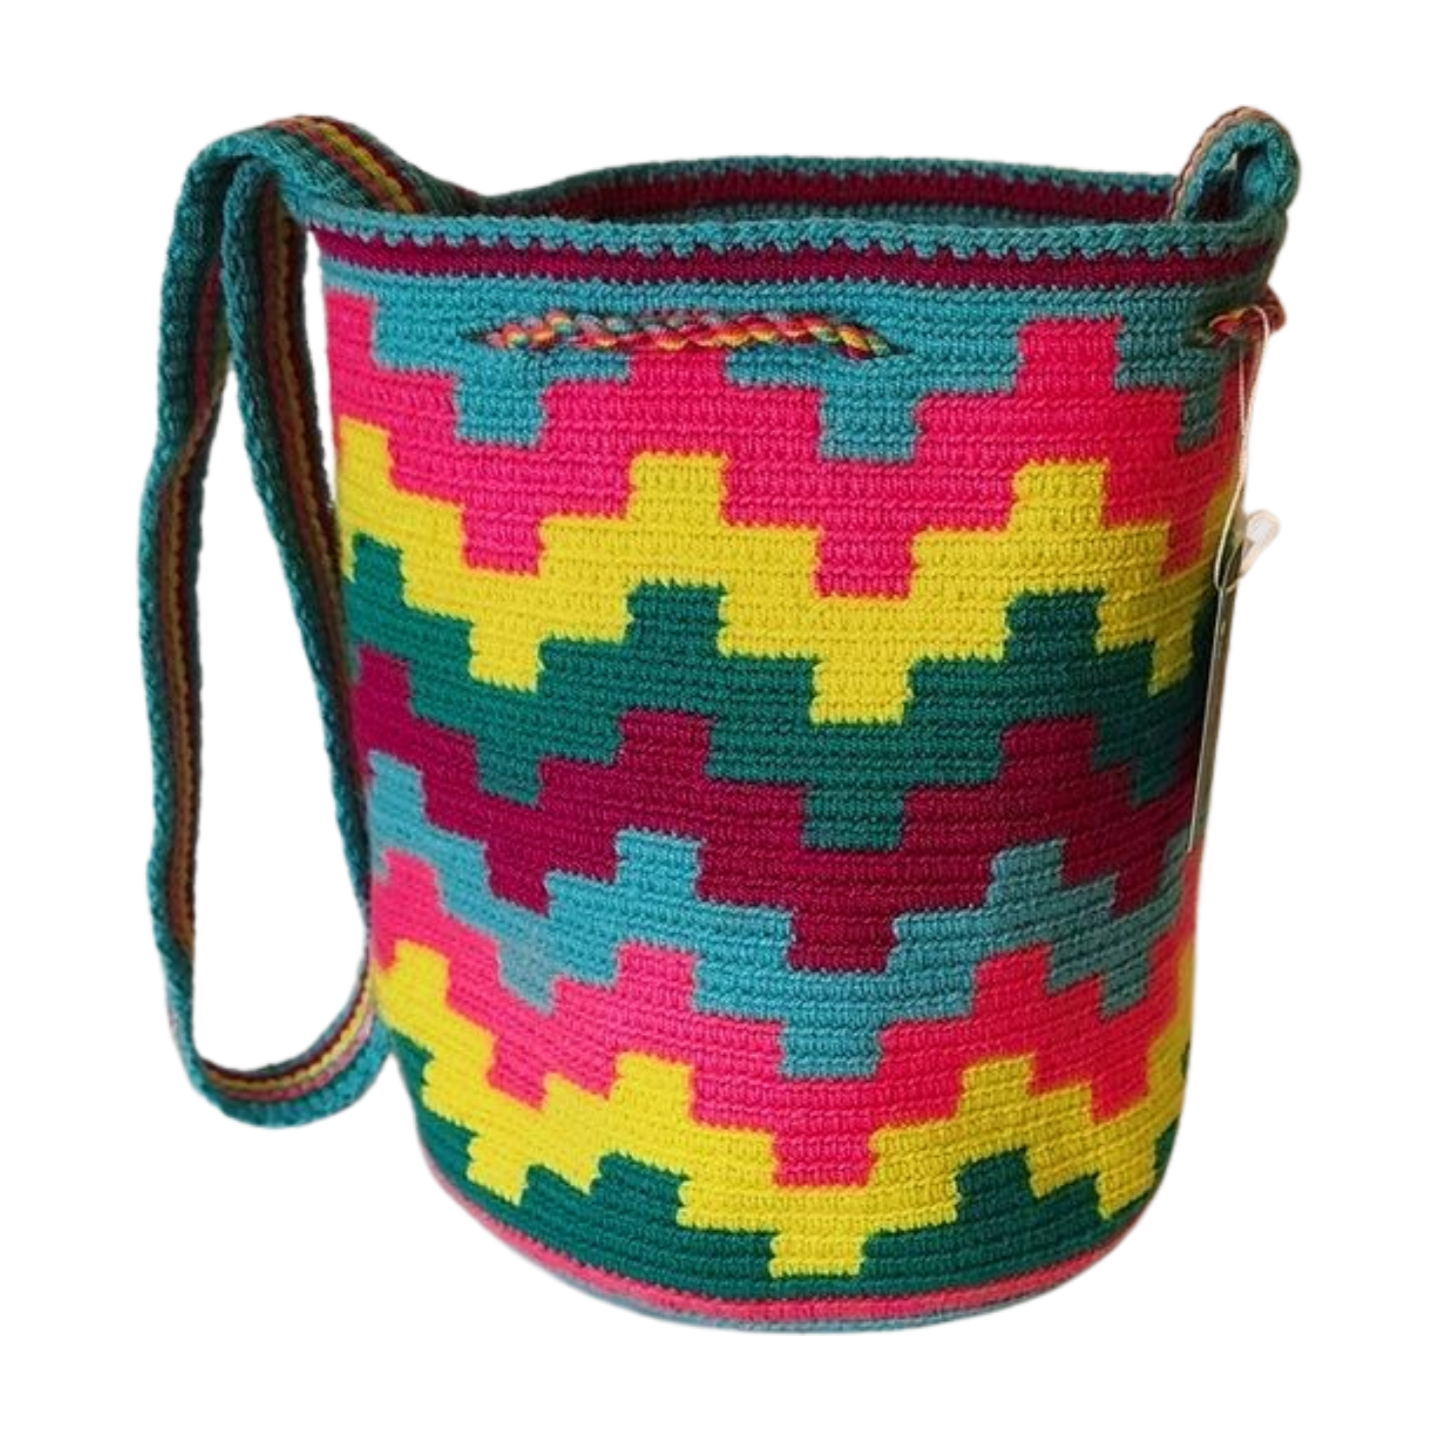 Justice Medium Handmade Crochet Handbag - Wuitusu